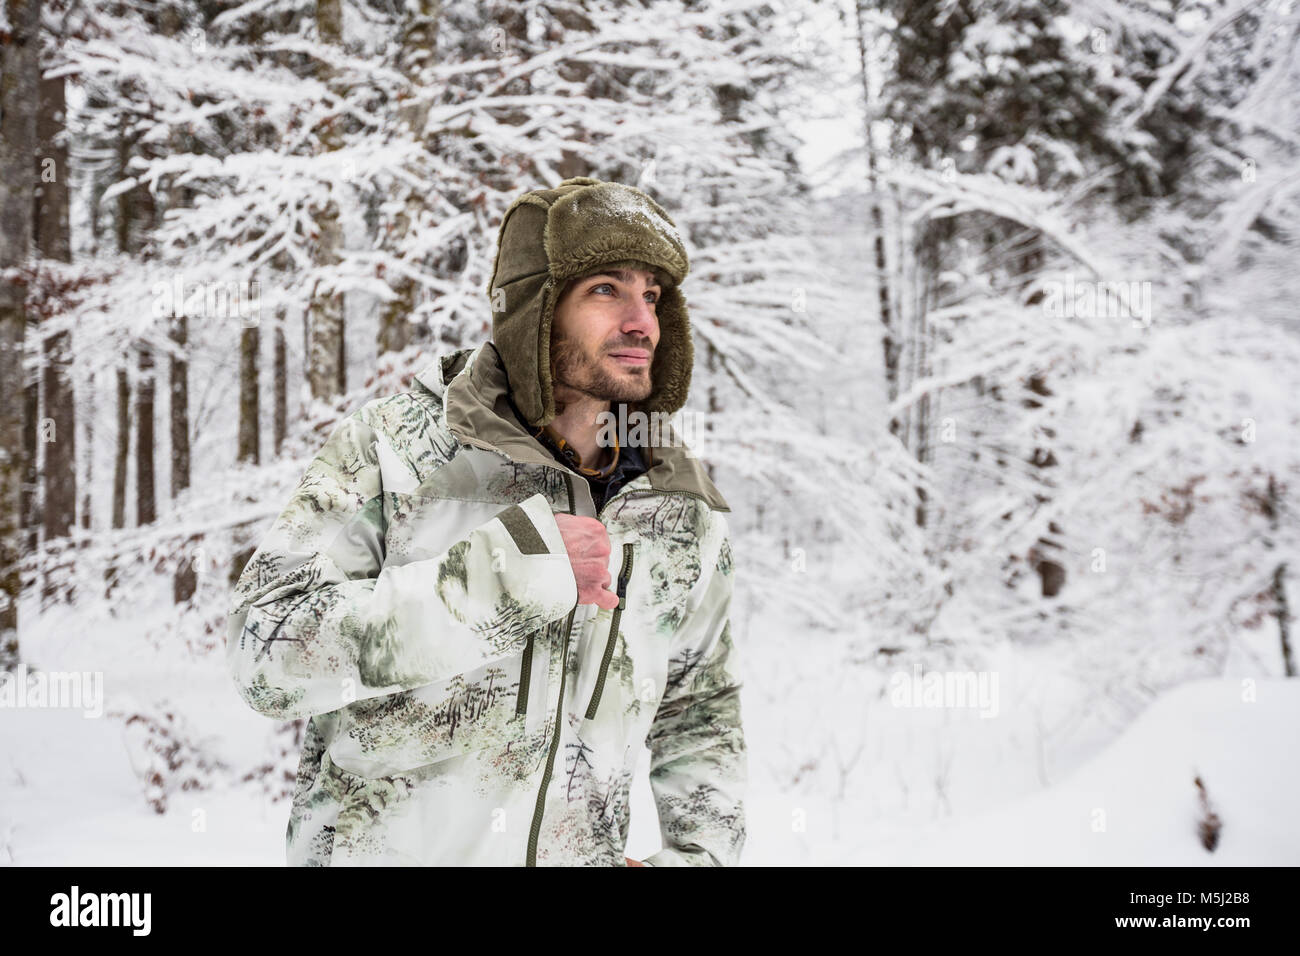 El hombre de la chaqueta de camuflaje de bosque en invierno Foto de stock